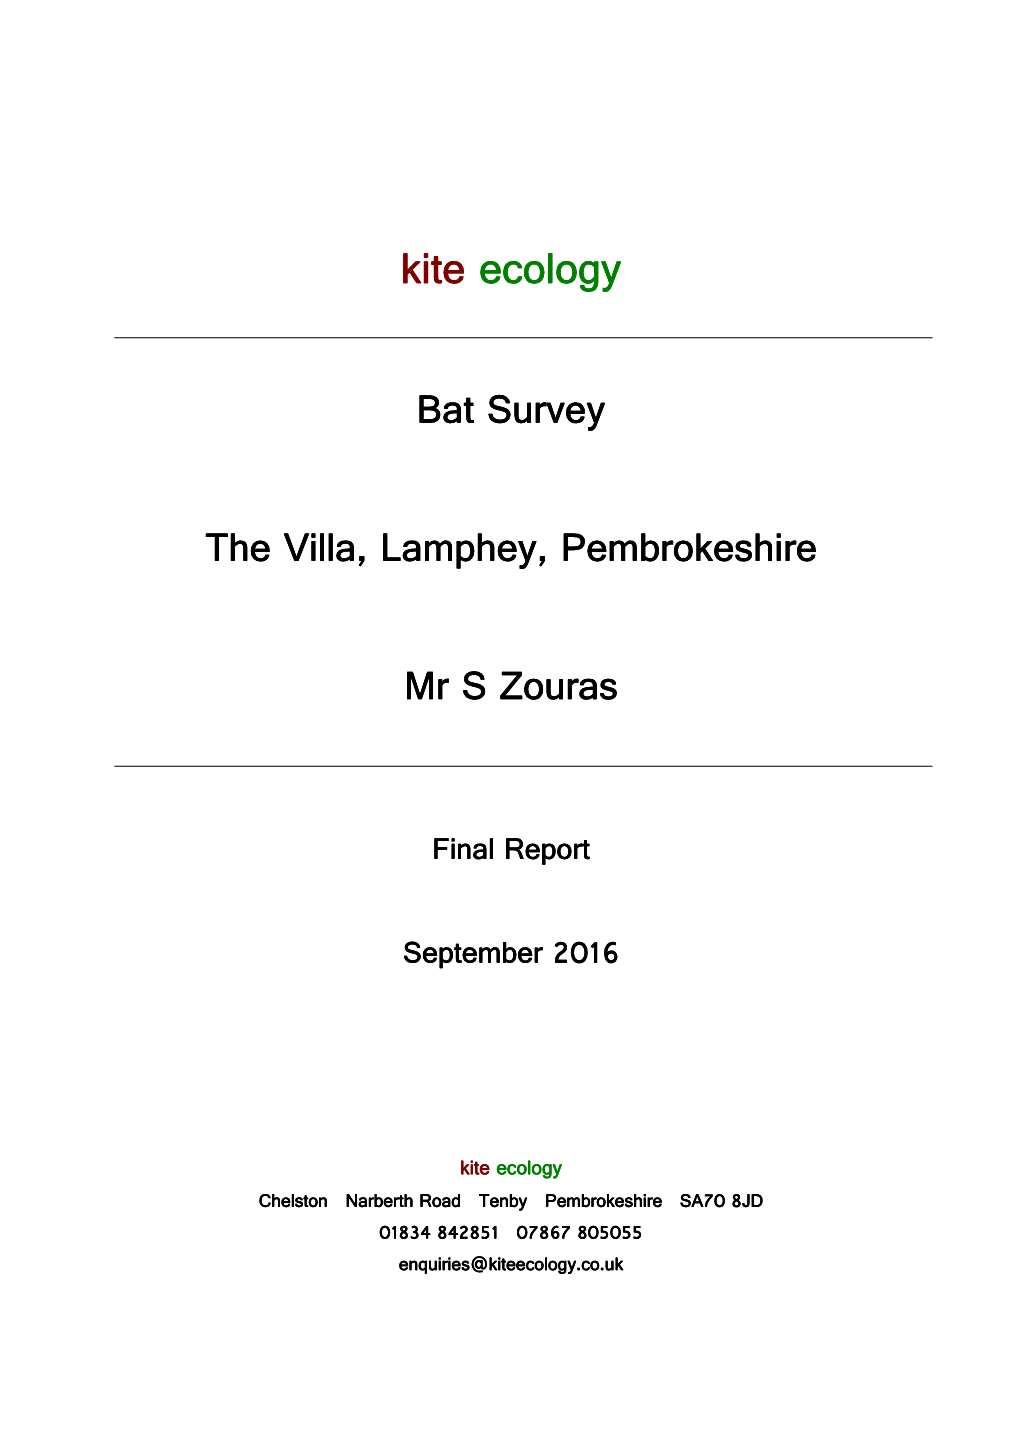 Kite Ecology